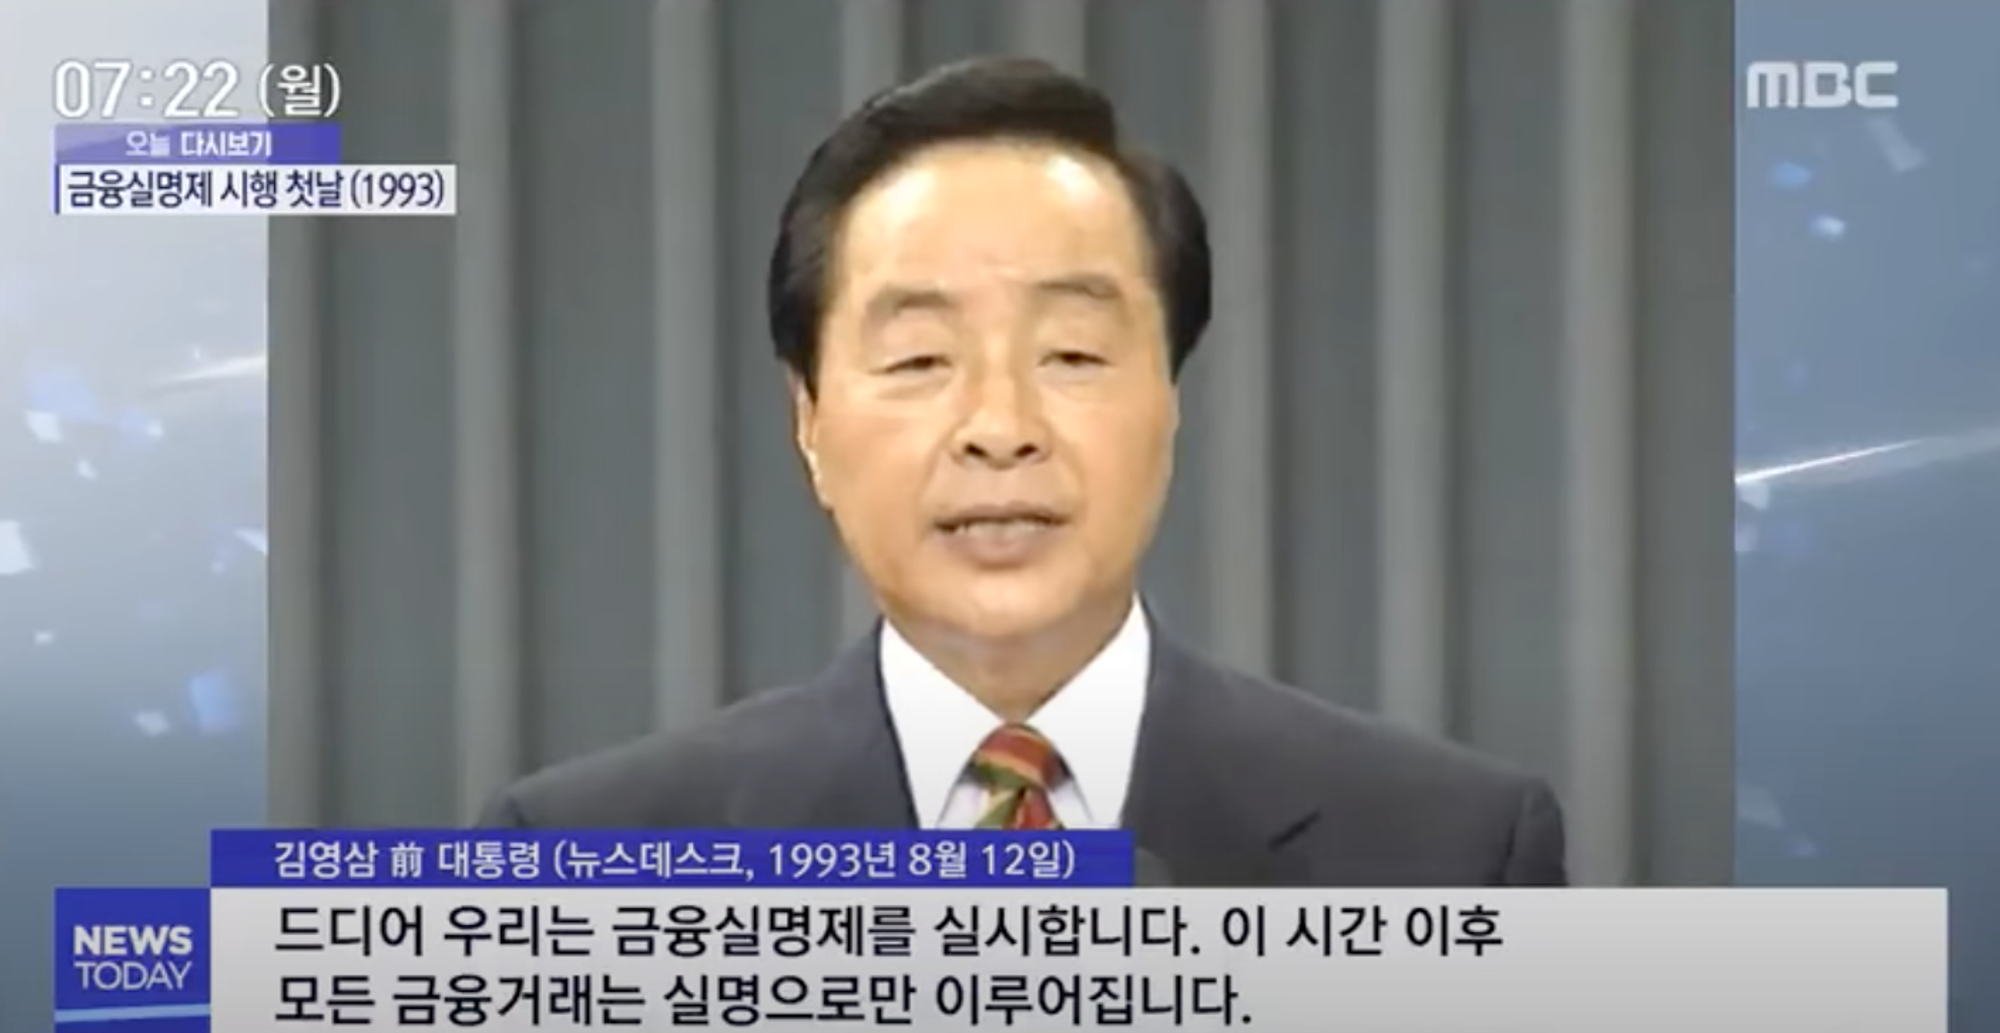 1993년 8월 12일 김영삼 전 대통령의 금융실명제 발표 방송 (출처: MBC)